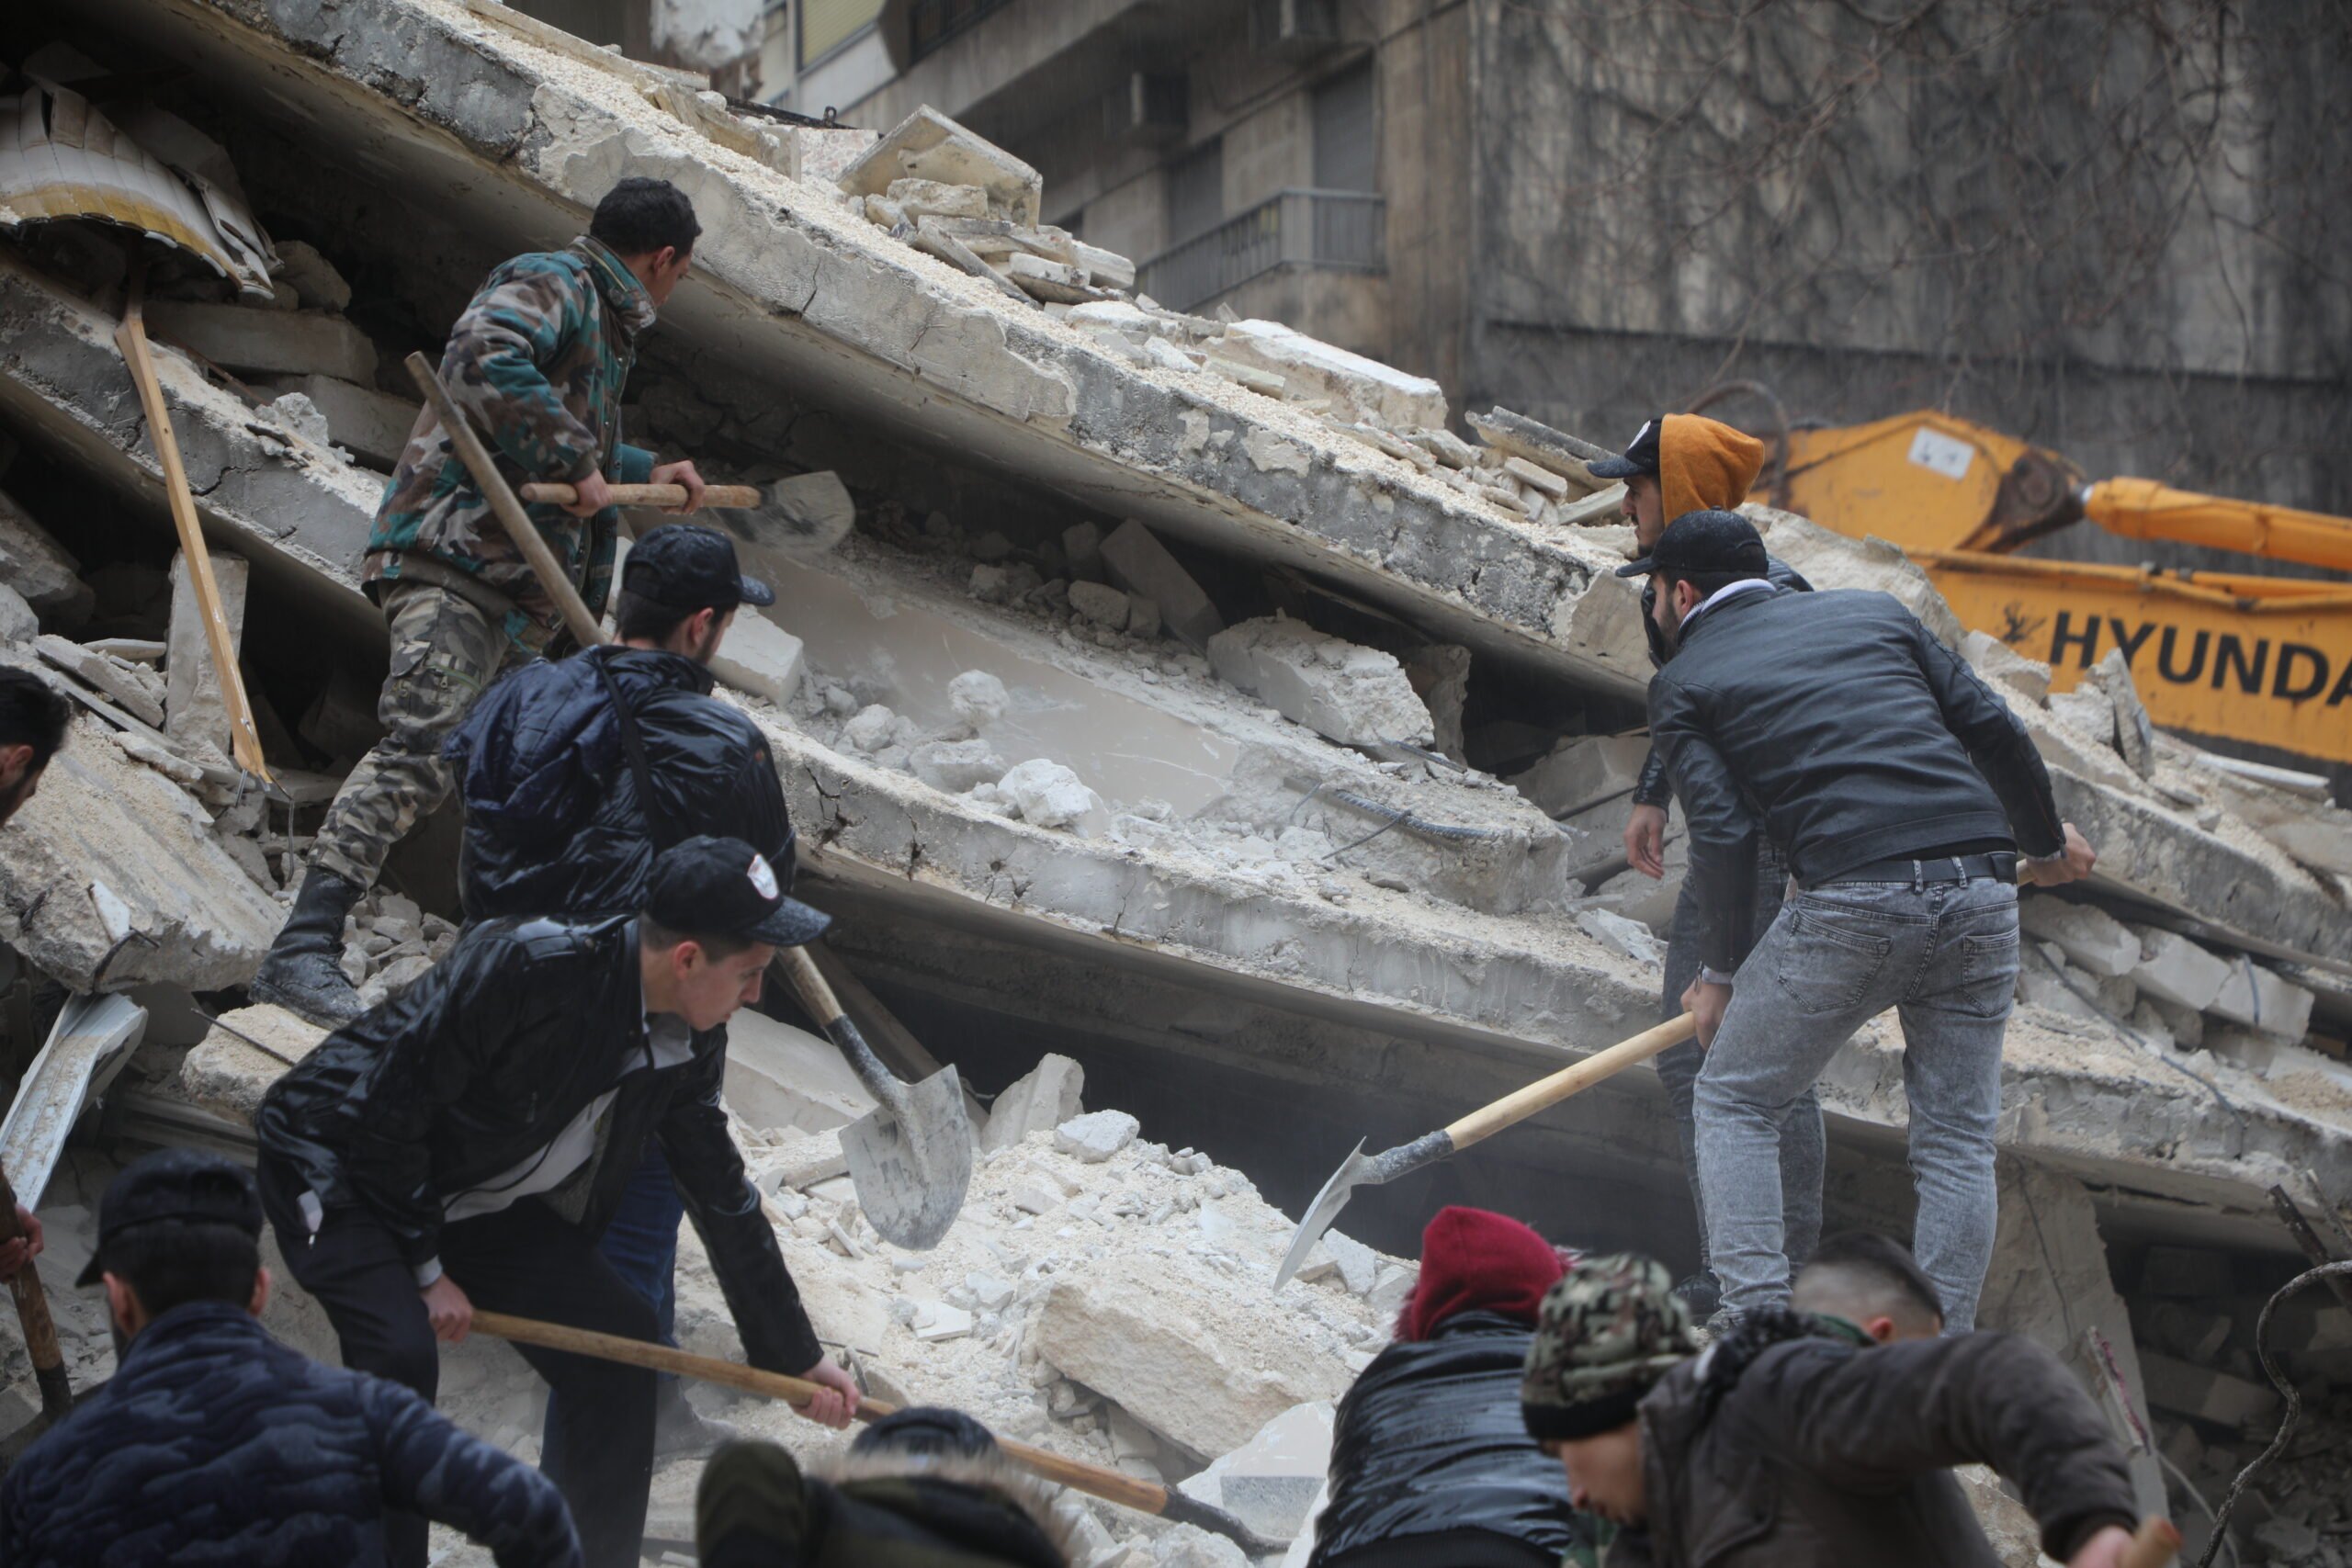 Mensen zoeken naar overlevenden onder het puin van een ingestort gebouw in de wijk Al-Aziziyeh in Aleppo, Syrië, na twee krachtige aardbevingen die de regio op 6 februari troffen. © UNHCR/Hameed Maarouf